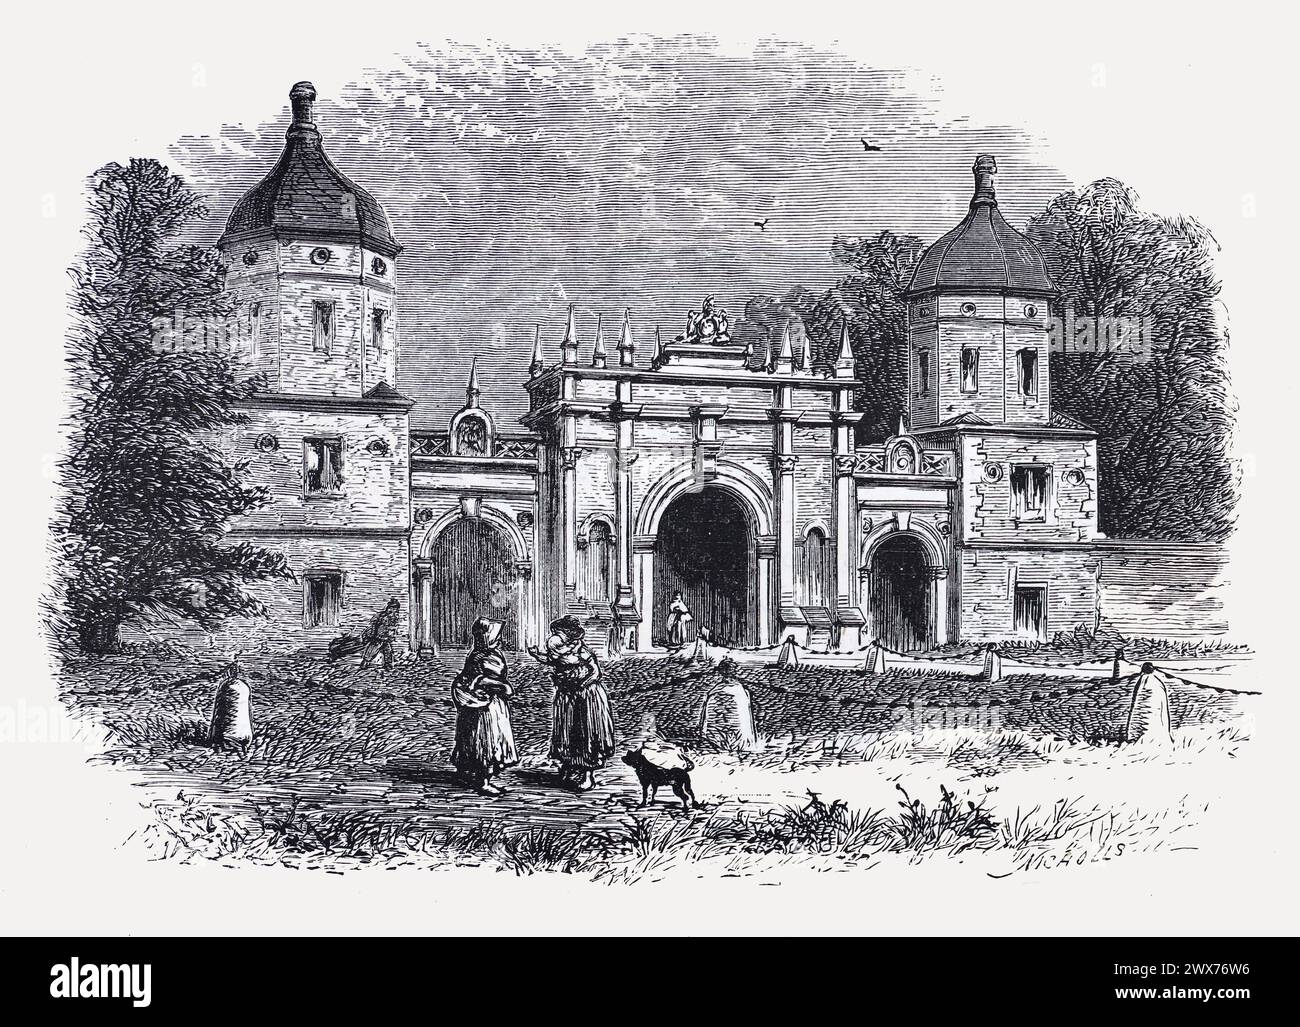 Die Lodge in Burghley, Stamford, im 19. Jahrhundert. Schwarz-weiß-Illustration aus dem „Our Own Country“ veröffentlicht von Cassell, Petter, Galpin & Co. Ende des 19. Jahrhunderts. Stockfoto